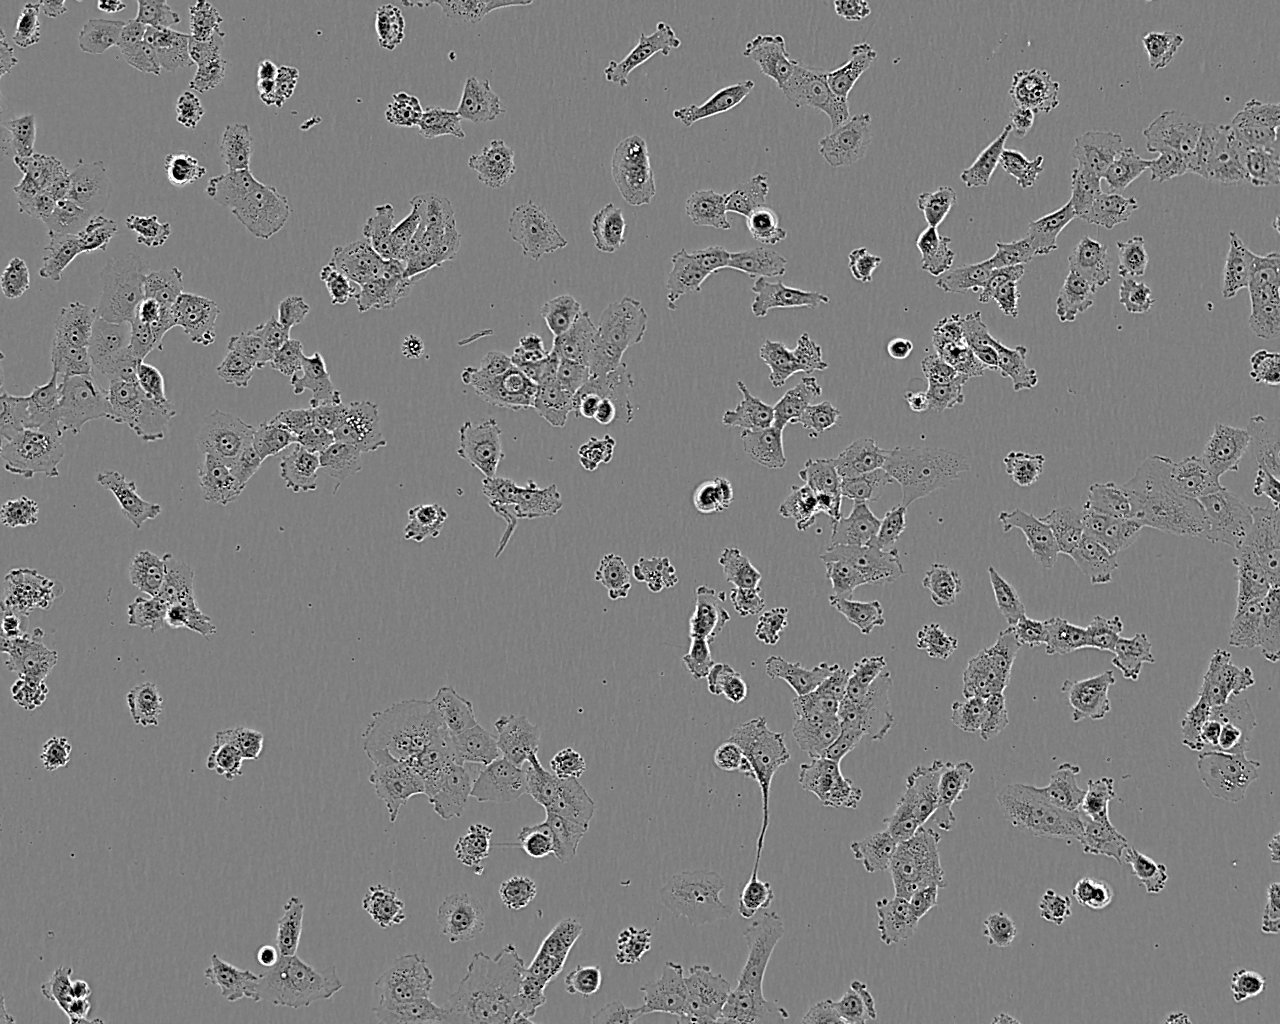 5-8F epithelioid cells鼻咽癌细胞系